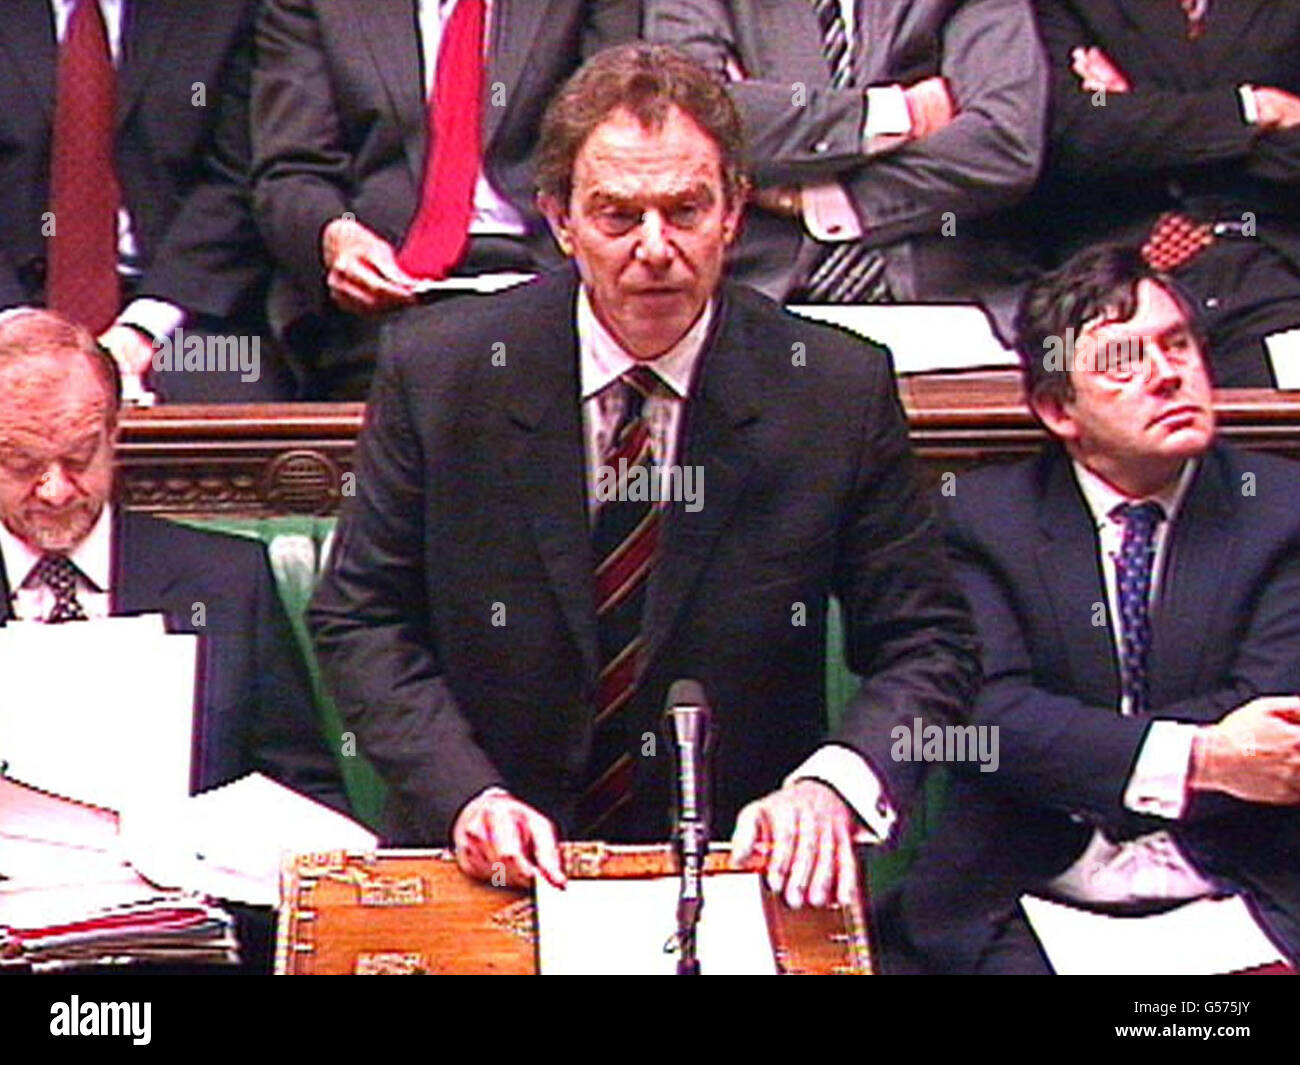 Il primo Ministro Tony Blair alla Camera dei Comuni, discute dei risultati del vertice UE di Nizza. In precedenza ha chiesto di porre fine alle lotte internotturne tra i leader dell'Unione europea dopo i loro ultimi colloqui maratonieri a Nizza. * Blair ha affermato che l'Unione ha dovuto cambiare il modo in cui ha condotto i suoi affari, dopo che il vertice cruciale volto a spianare la strada all'allargamento dell'Unione si è finalmente concluso alle 3.25 dopo cinque giorni di discussioni su questioni complesse. Foto Stock